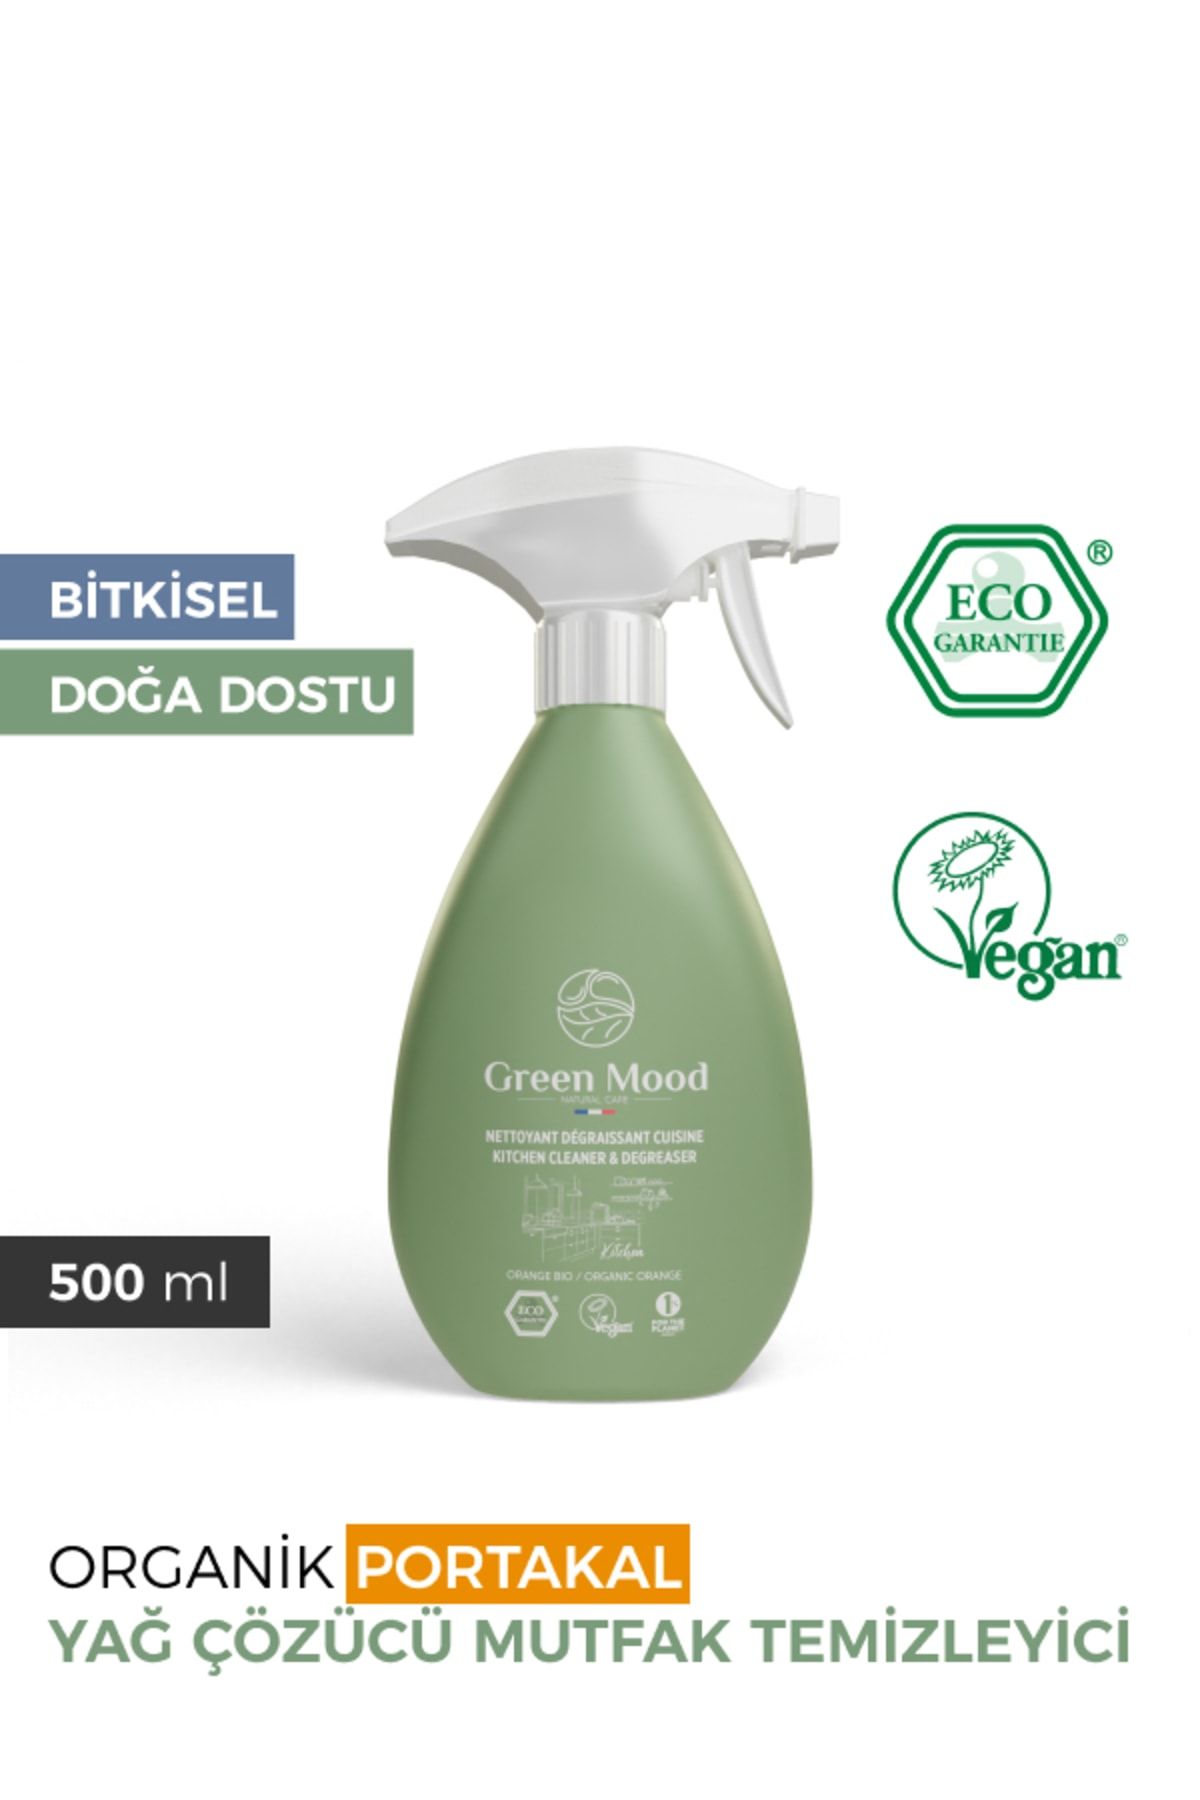 Green Mood Bitkisel Vegan Yağ Çözücü Mutfak Temizleyici Sprey 500 ml Organik Portakal Yağlı